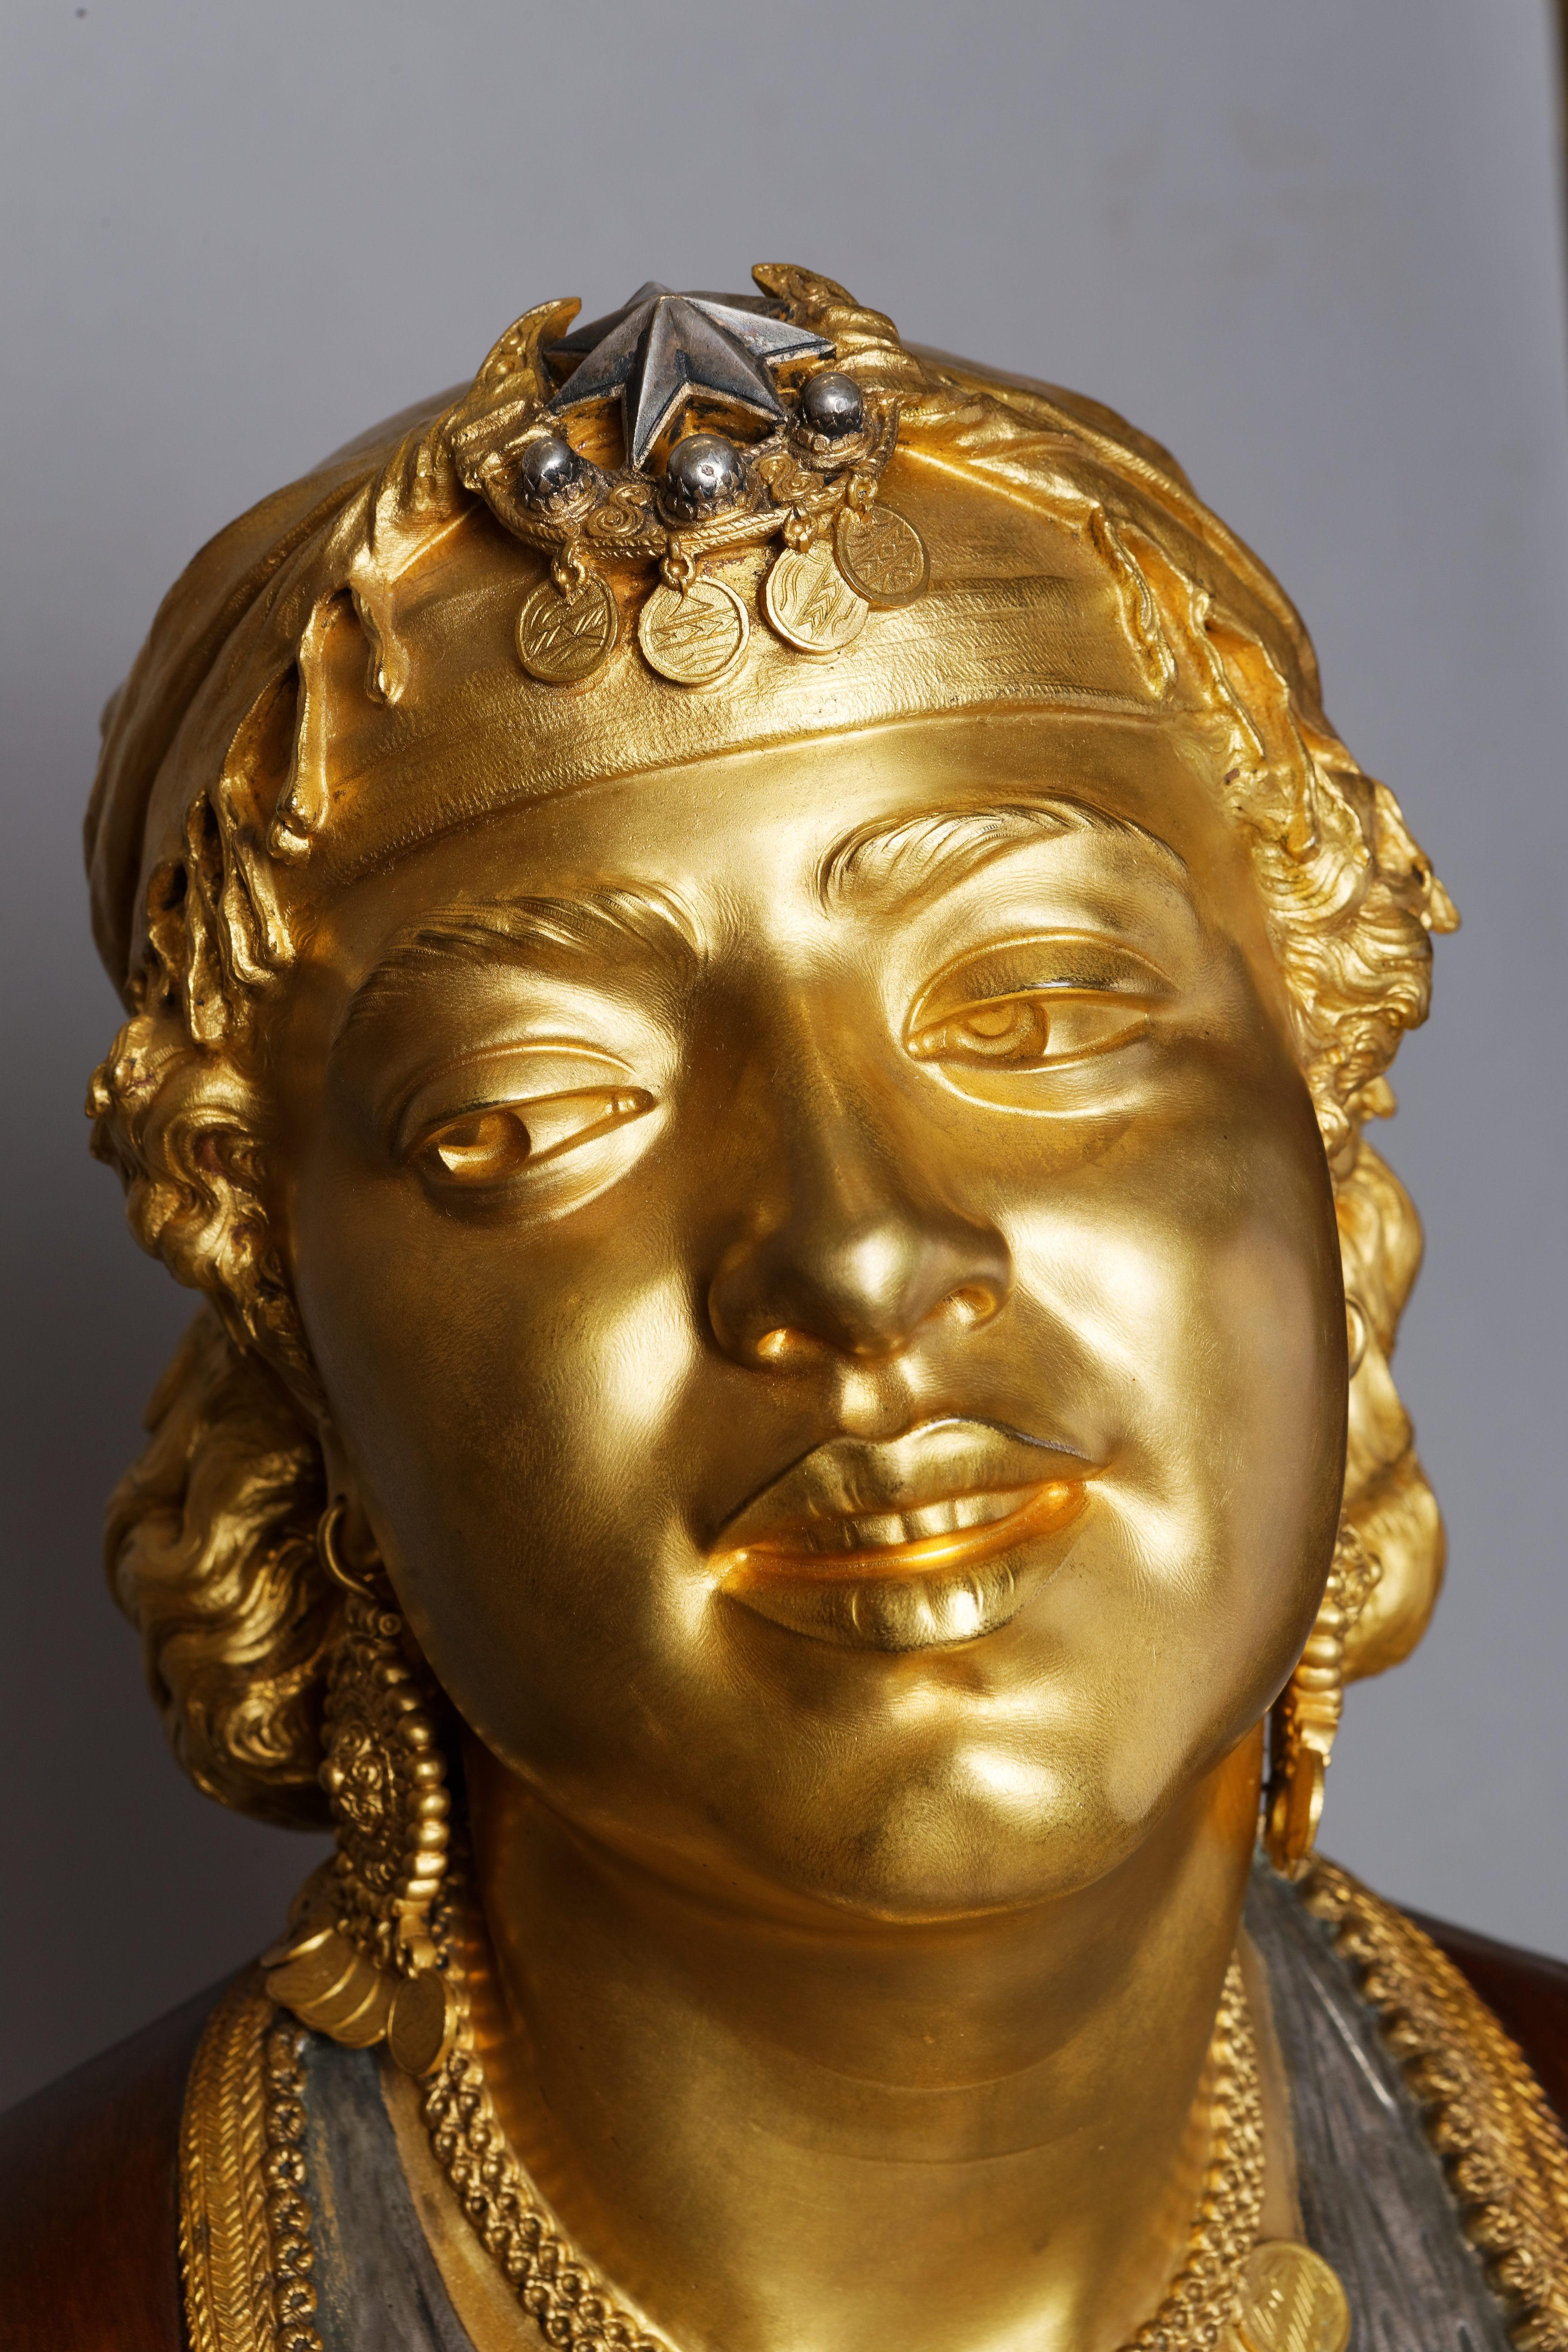 Büste einer orientalischen Frau
von Emile GUILLEMIN (1841-1907)
Orientalische Bronzeskulptur mit dreifacher Patina, vergoldet, dunkelrotbraun und versilbert.

Frankreich
um 1880
Gesamthöhe 63 cm

Biographie :
Emile-Coriolan Guillemin (1841-1907) war